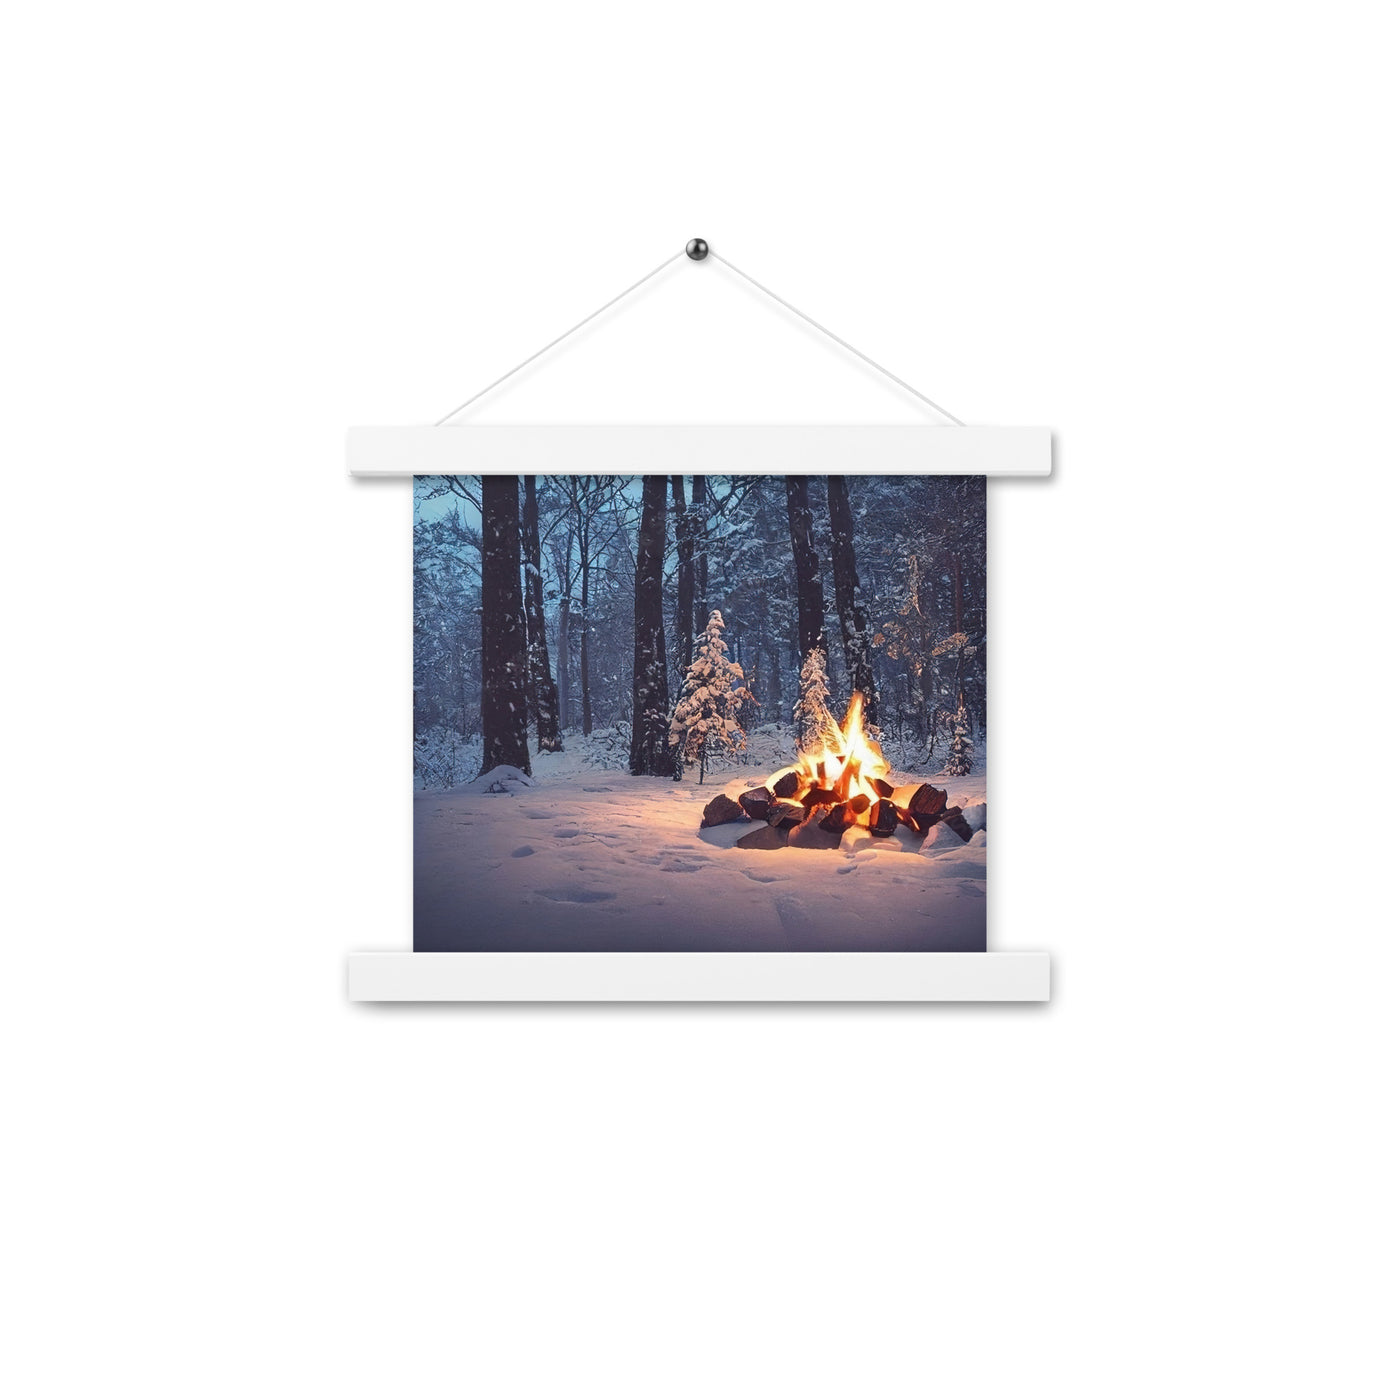 Lagerfeuer im Winter - Camping Foto - Premium Poster mit Aufhängung camping xxx 25.4 x 25.4 cm